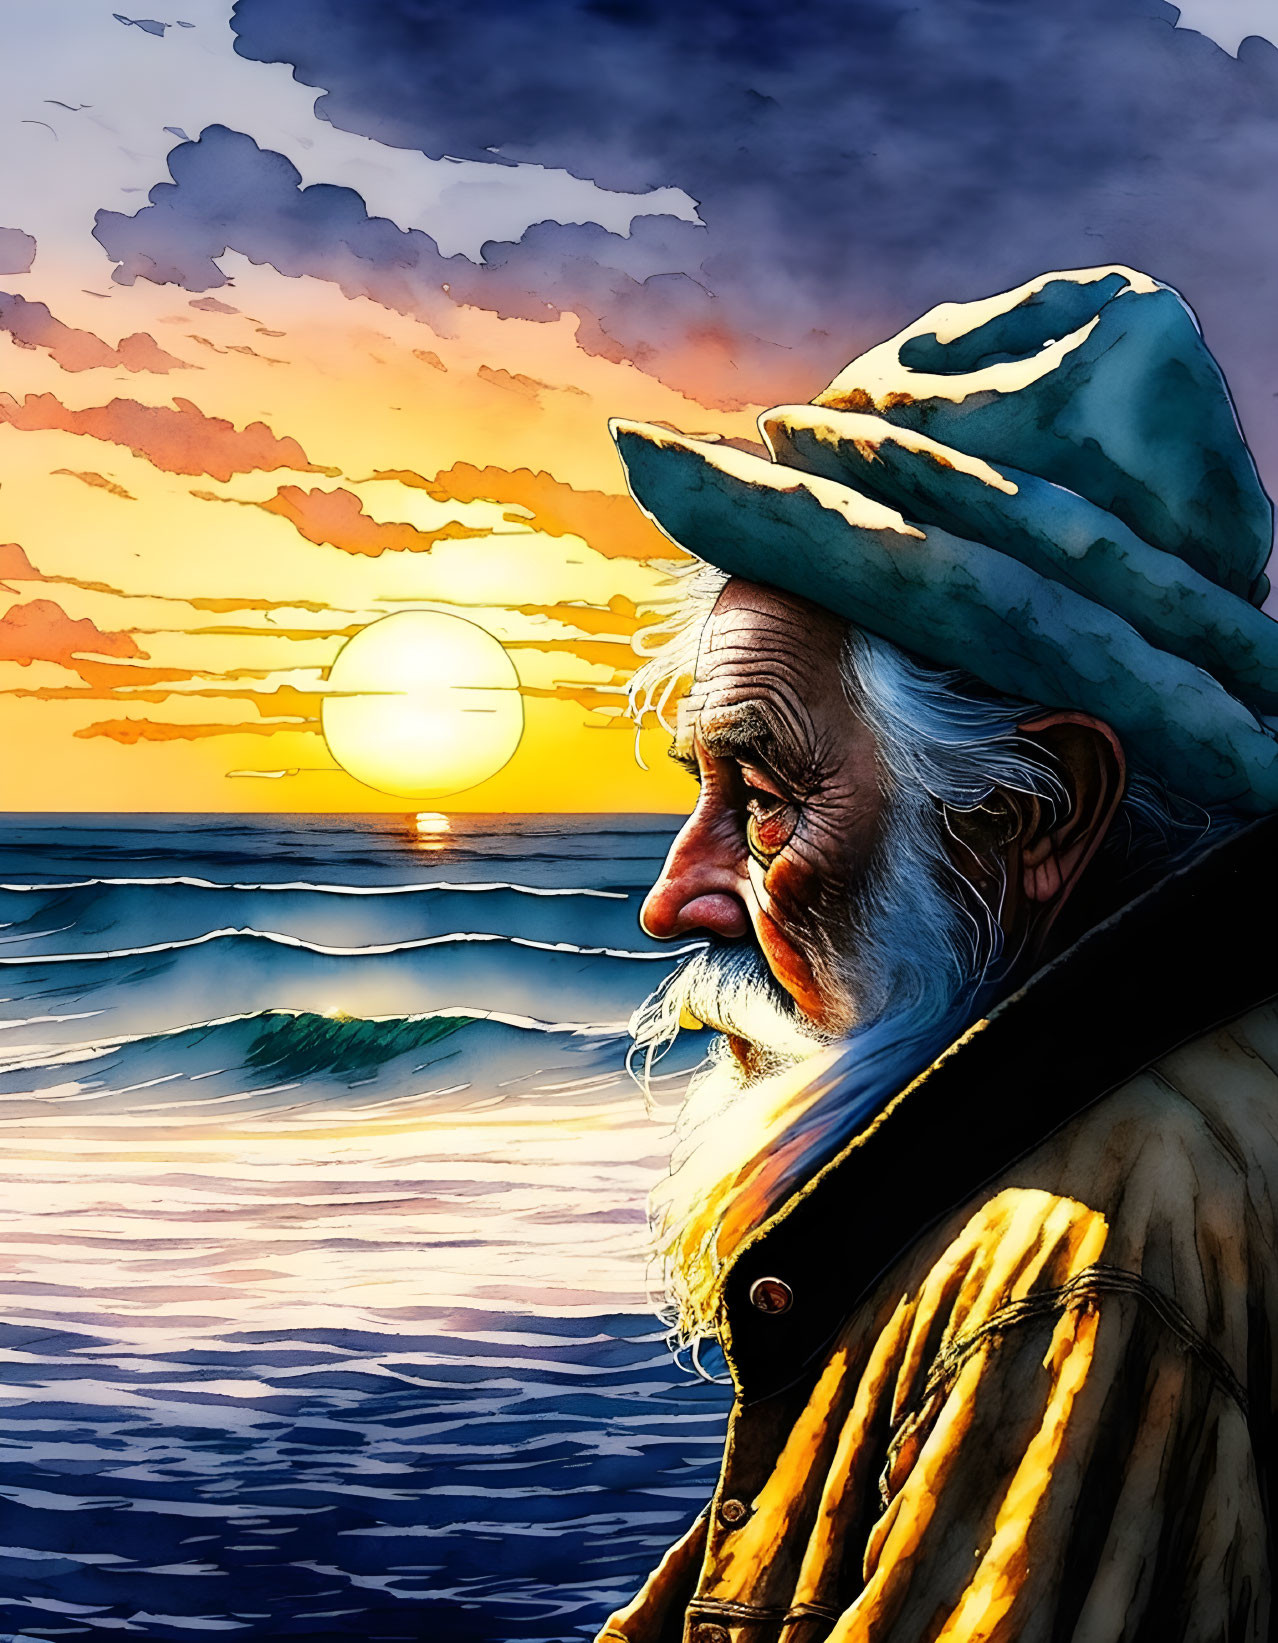 Elderly bearded man in hat gazes at vibrant ocean sunset